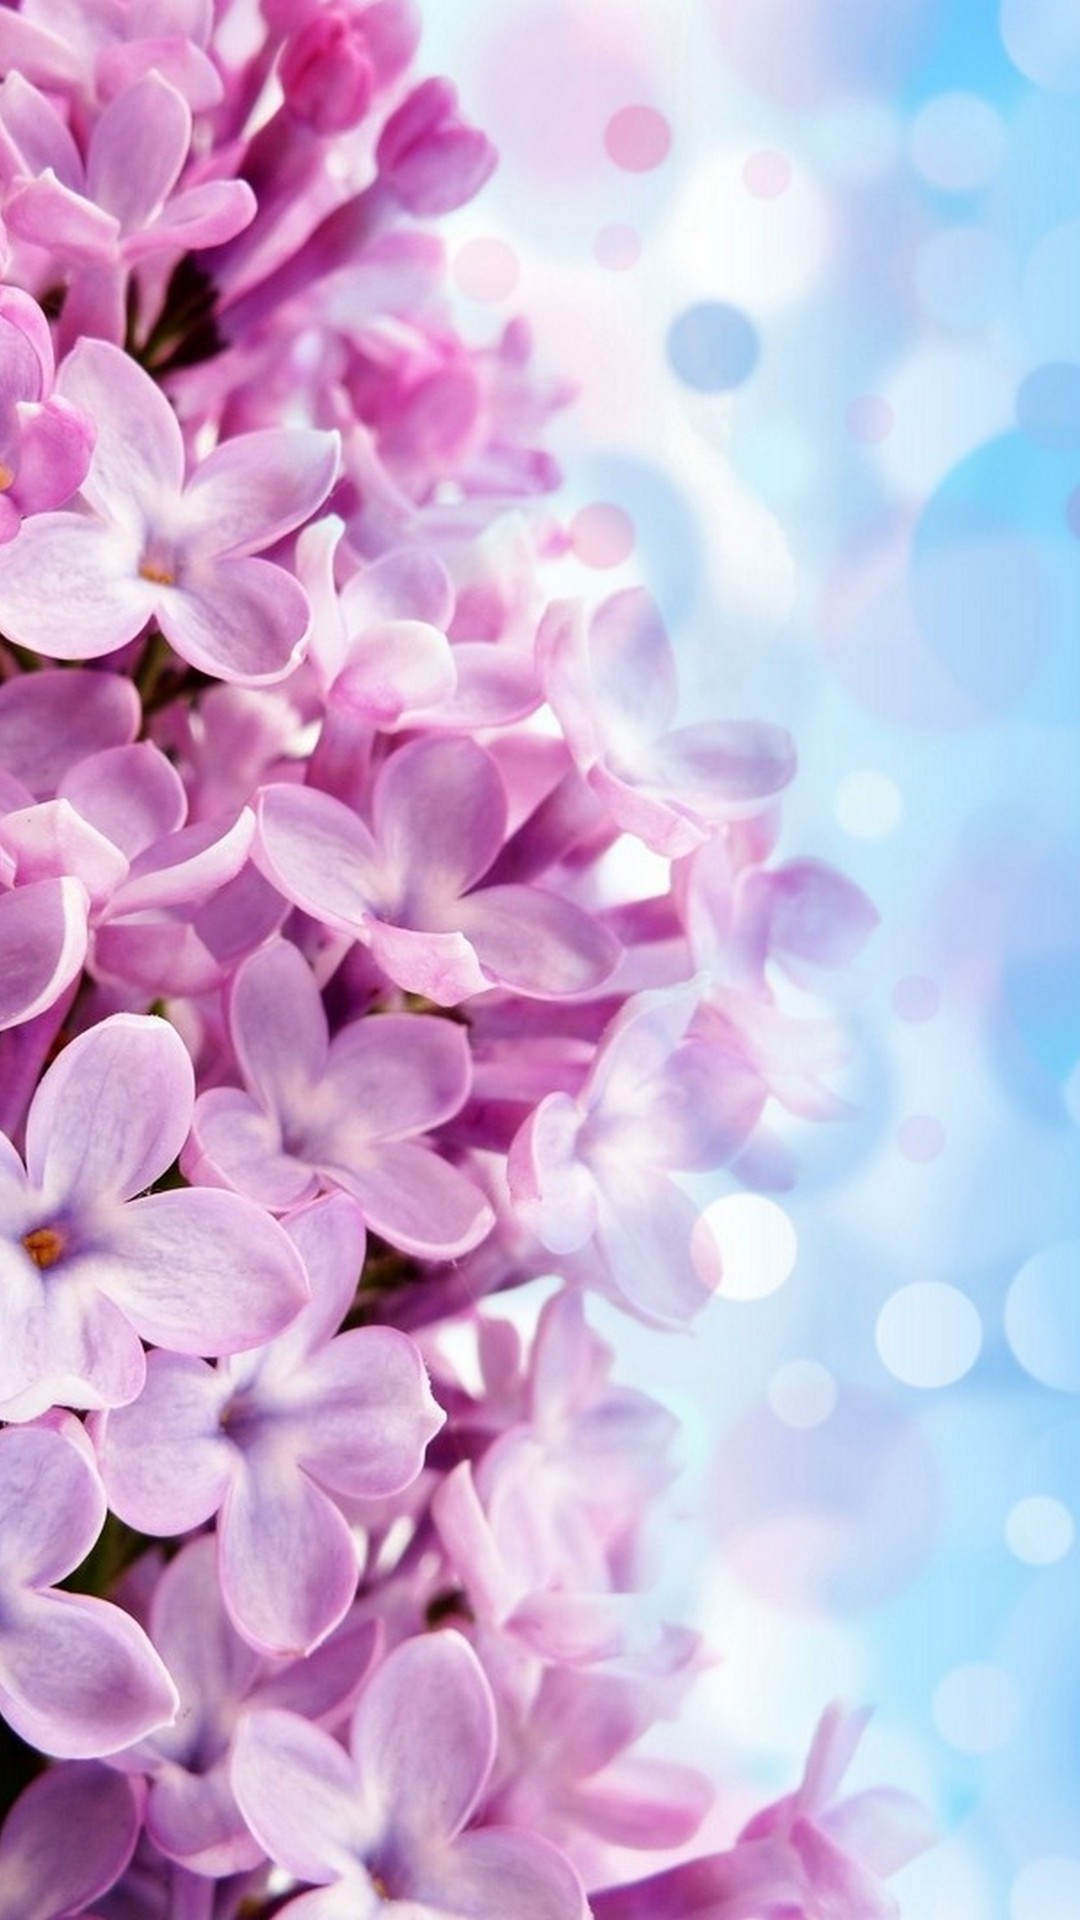 iPhone Wallpaper HD Purple Flowers 1080x1920